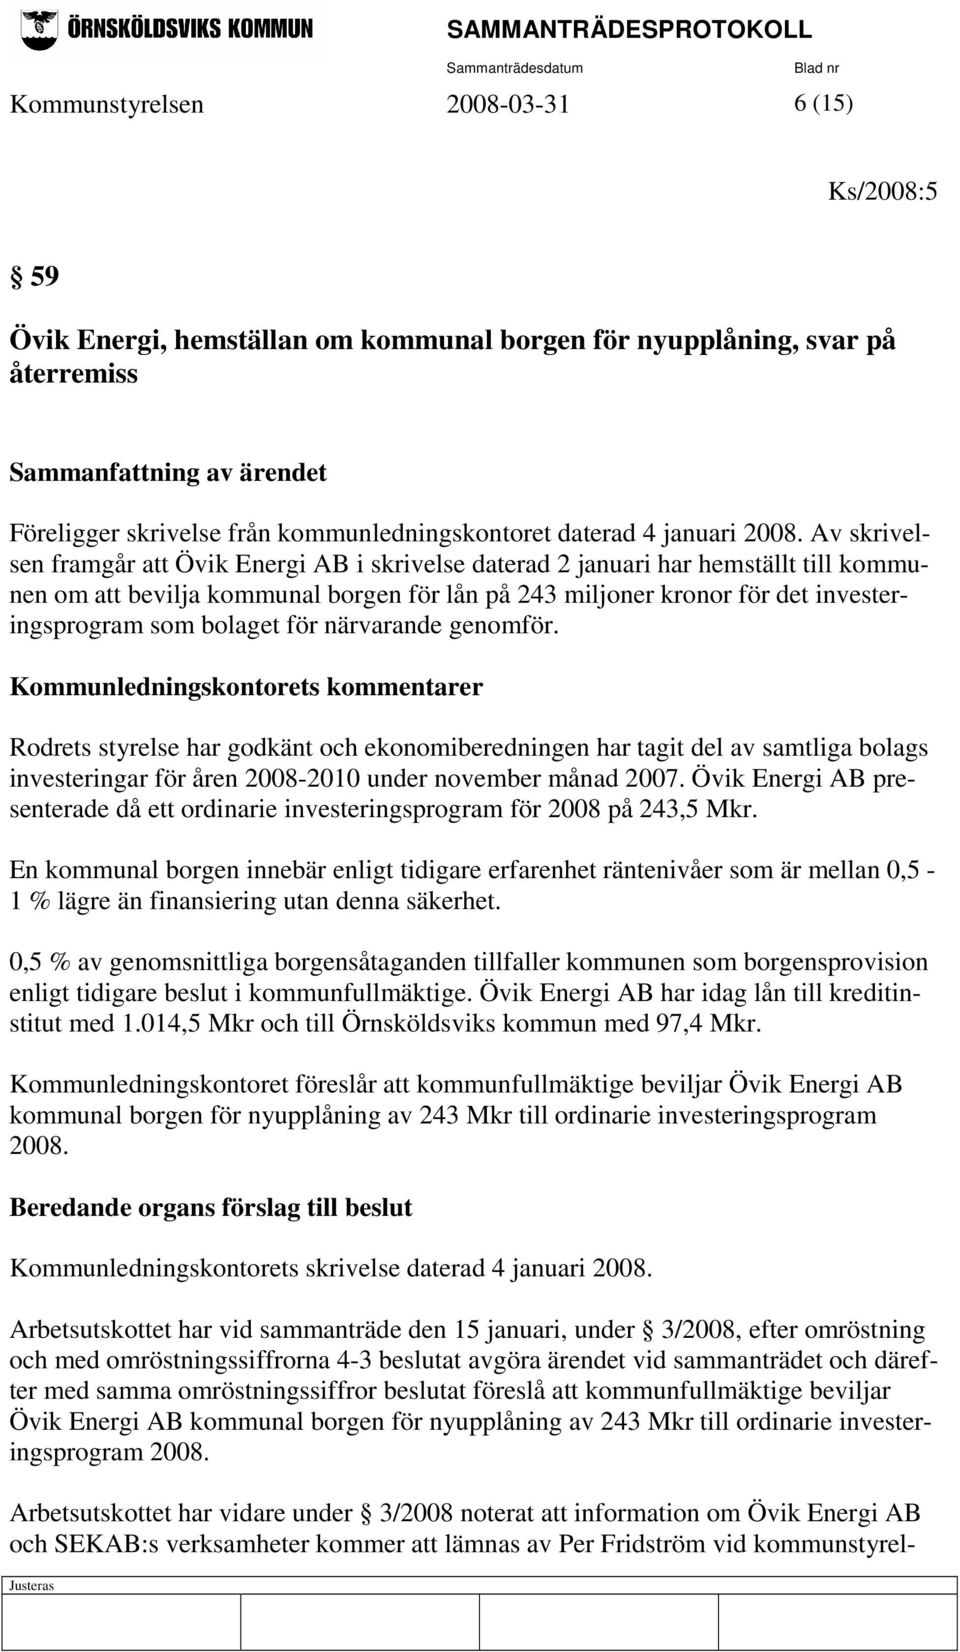 Av skrivelsen framgår att Övik Energi AB i skrivelse daterad 2 januari har hemställt till kommunen om att bevilja kommunal borgen för lån på 243 miljoner kronor för det investeringsprogram som